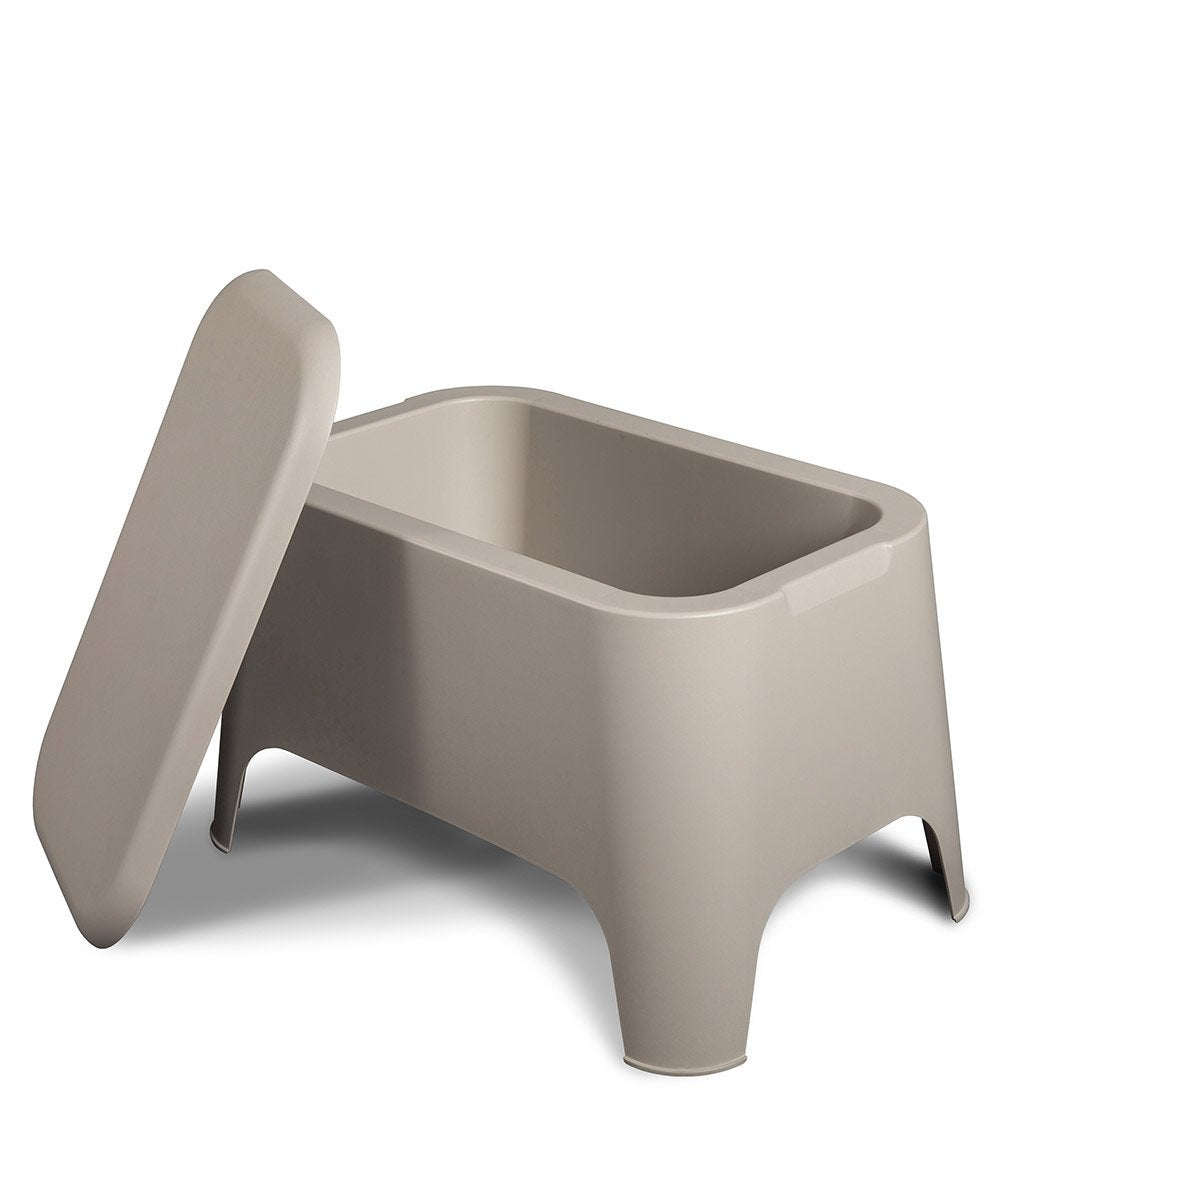 immagine-1-plastmeccanica-tavolino-contenitore-in-resina-petra-grigio-ean-8009371018326